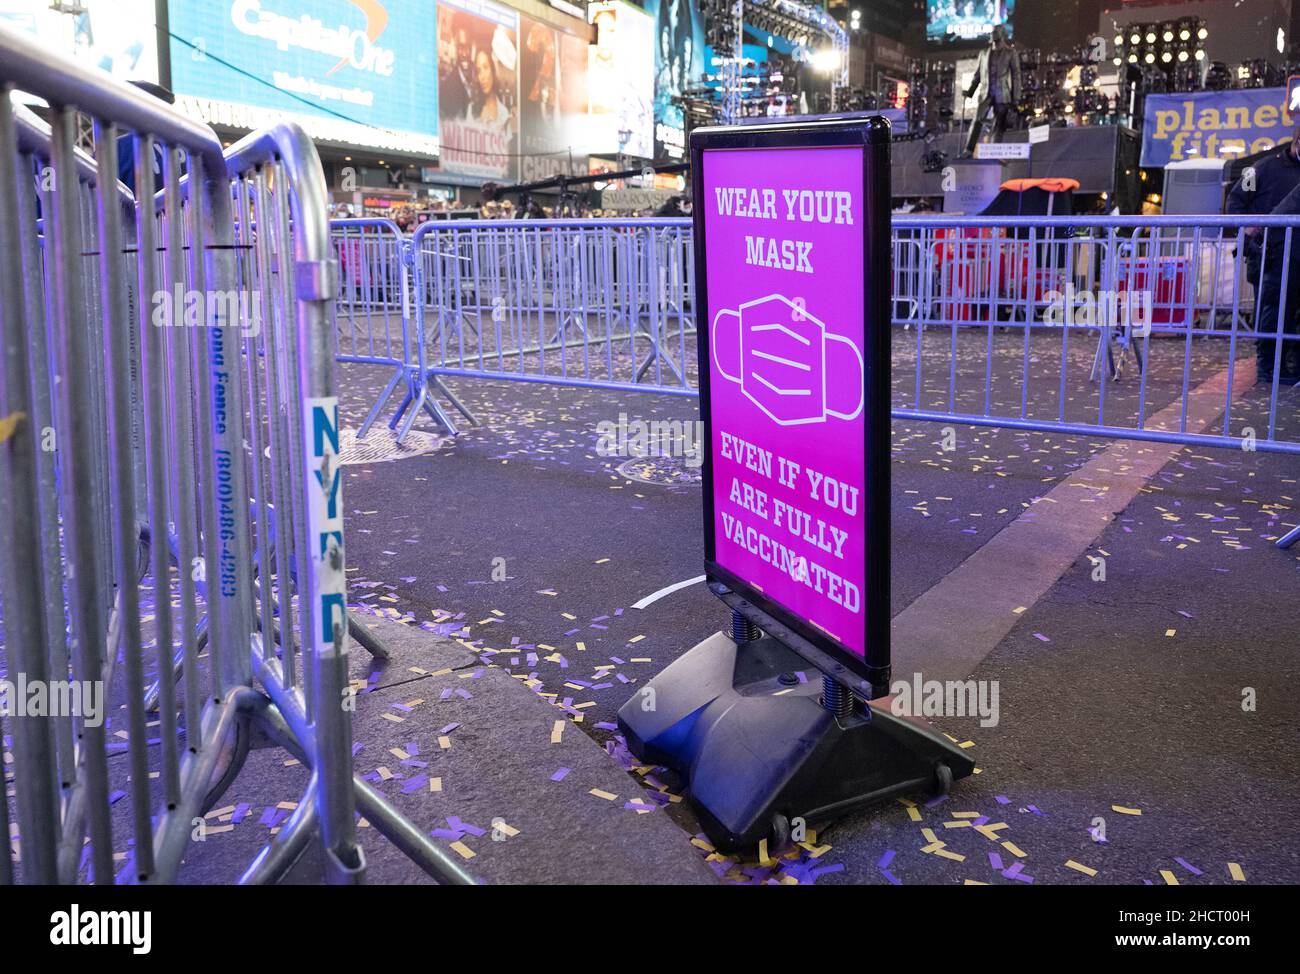 New York, USA. 31st Dez 2021. Am Freitag, den 31. Dezember 2021, findet auf der Straße ein Schild mit Gesichtsmasken statt, auf dem die Menschen am Times Square in New York City Silvester feiern. Foto von Gabriele Holtermann/UPI Kredit: UPI/Alamy Live News Stockfoto